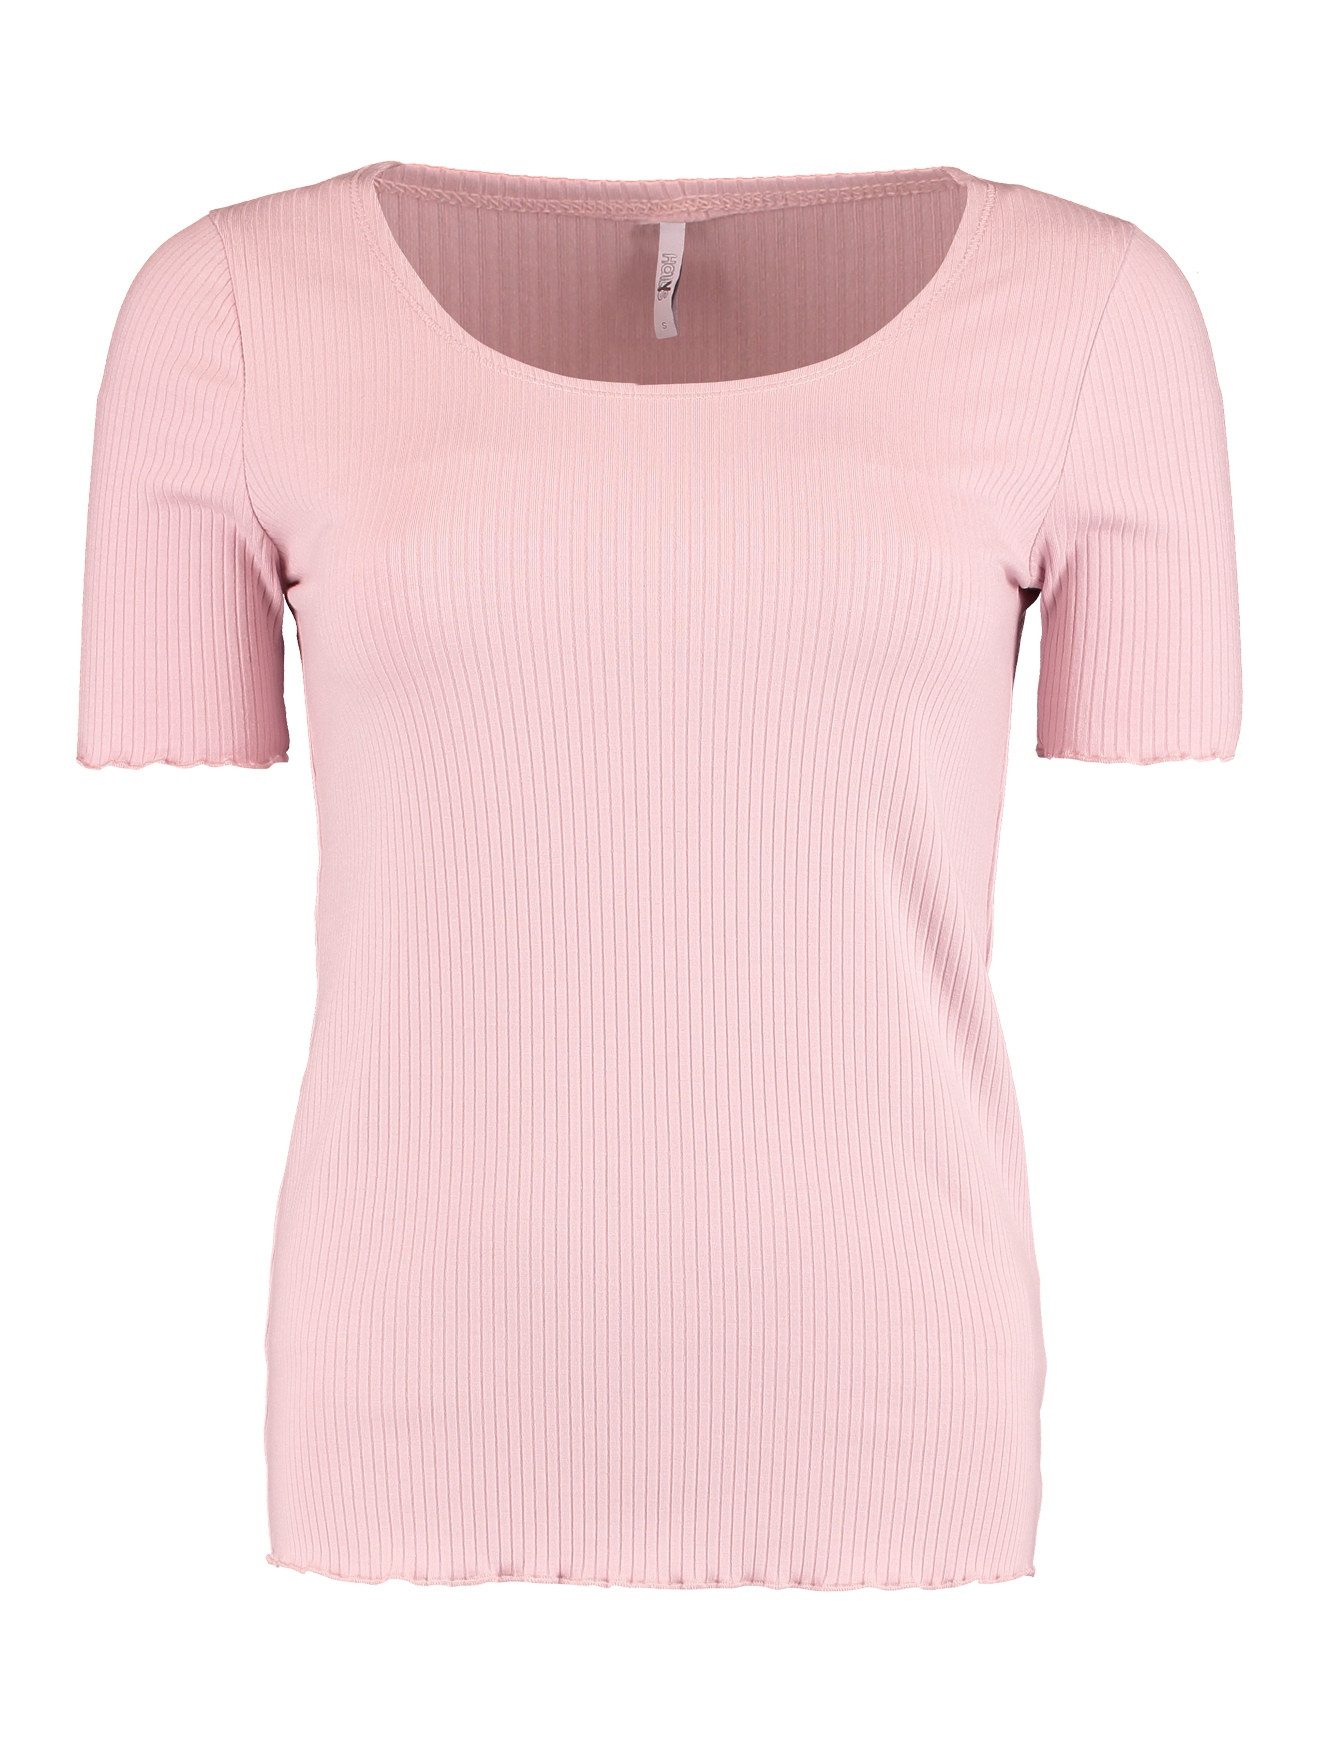 HaILY’S T-Shirt Top Halbarm Shirt Gerippt Rundhals Oberteil 7374 in Rosa